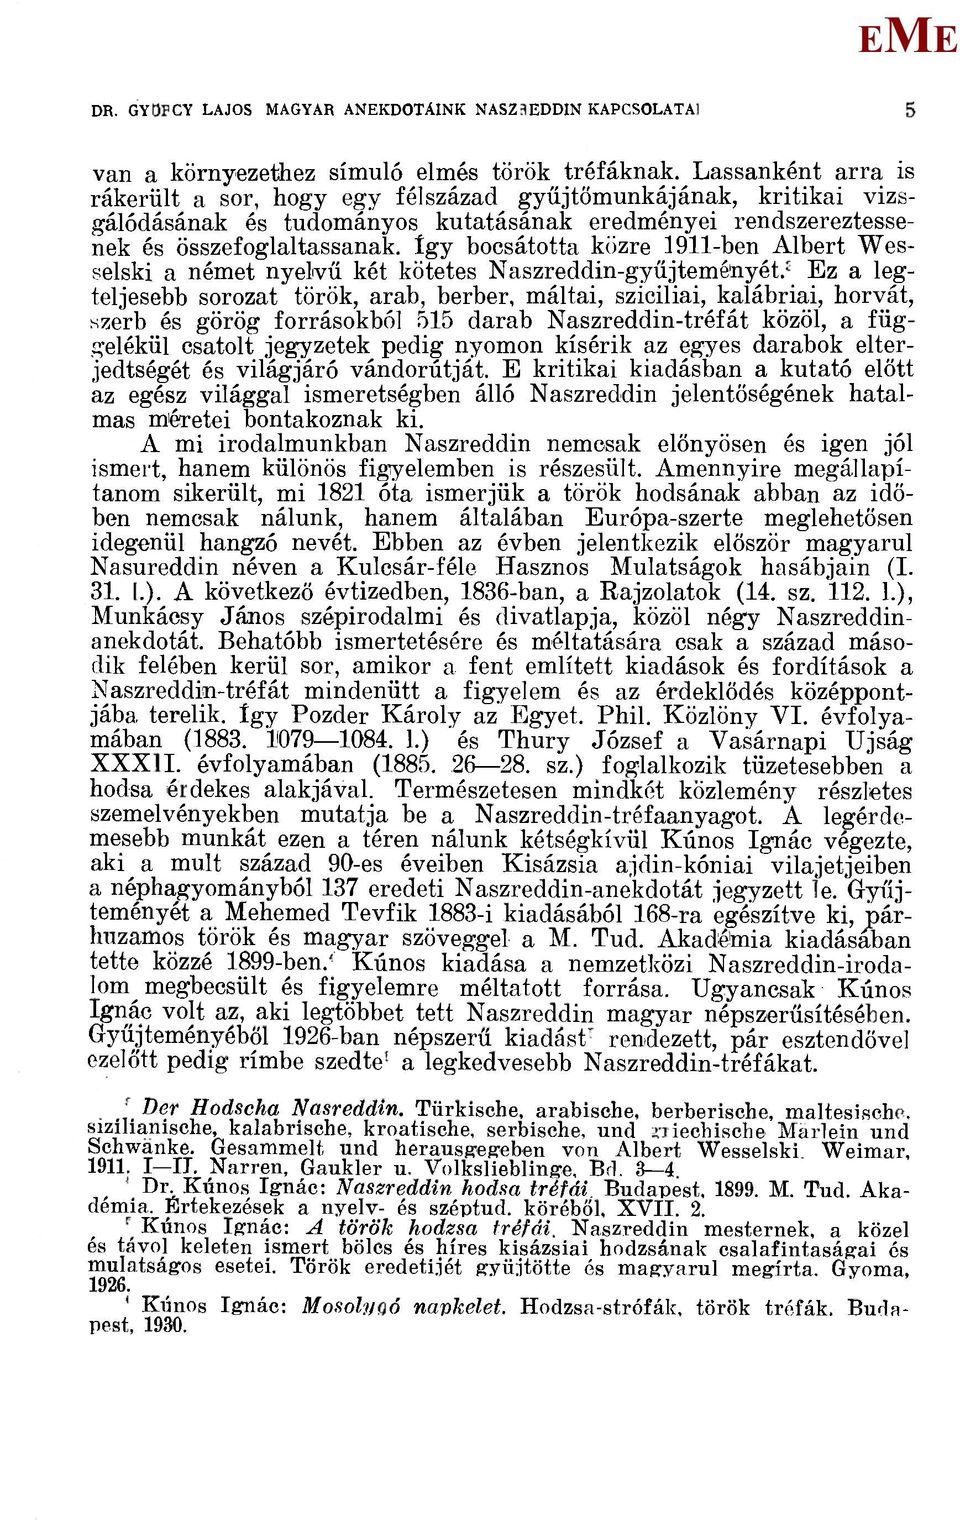 így bocsátotta közre 1911-ben Albert Wesselski a német nyelvű két kötetes Naszreddin-gyűjteméliyét.